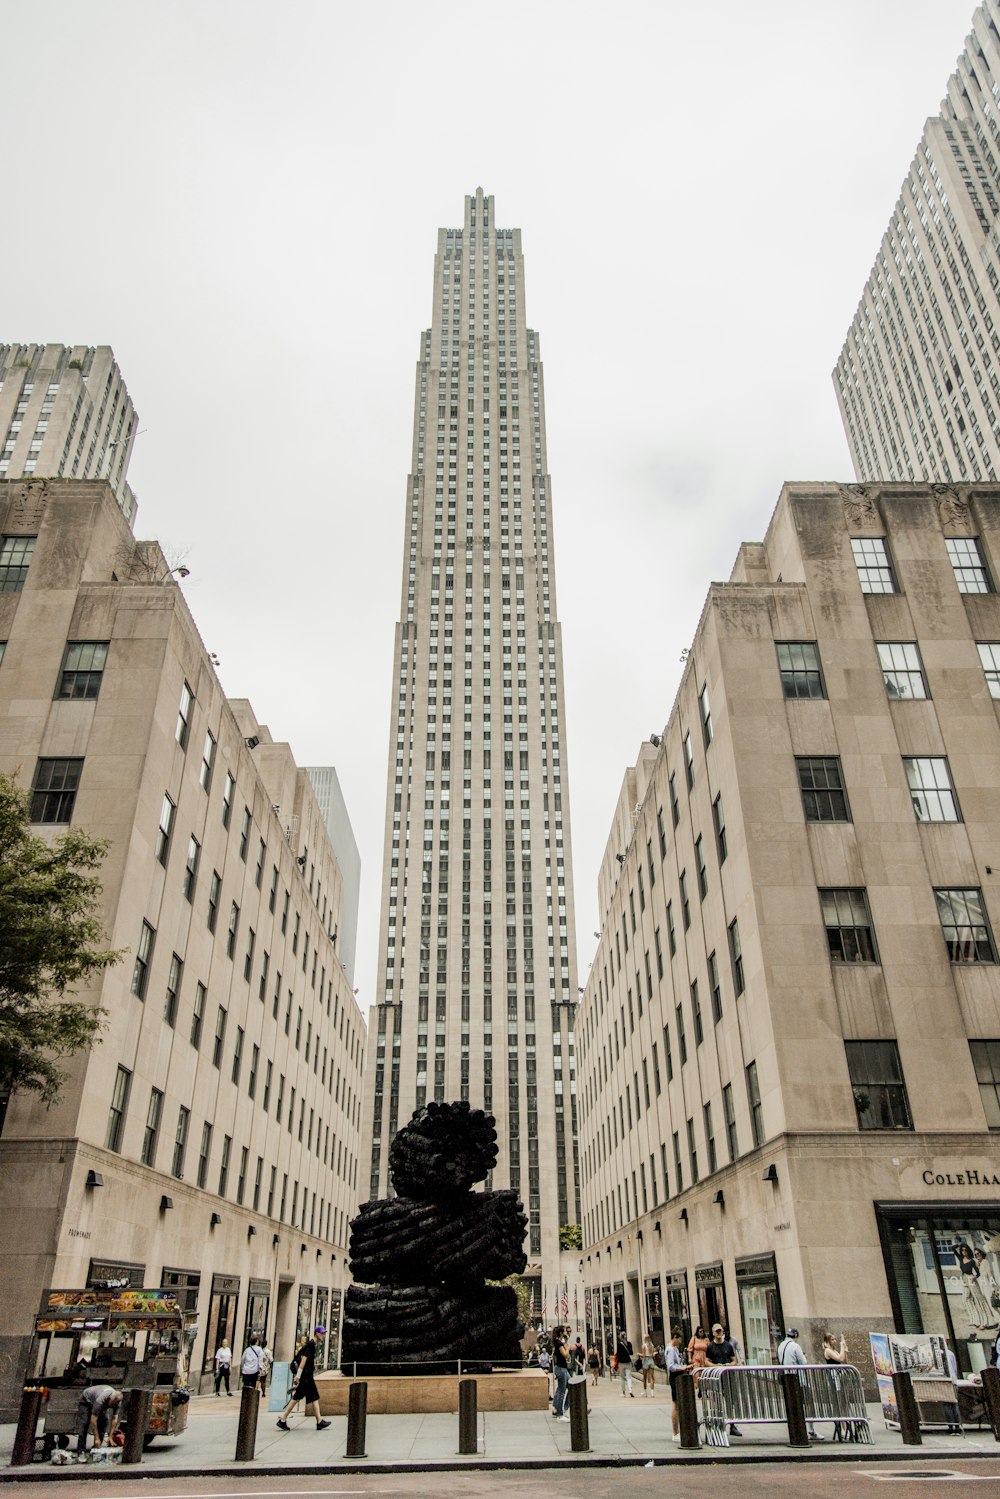 Un edificio alto con una estatua frente a él